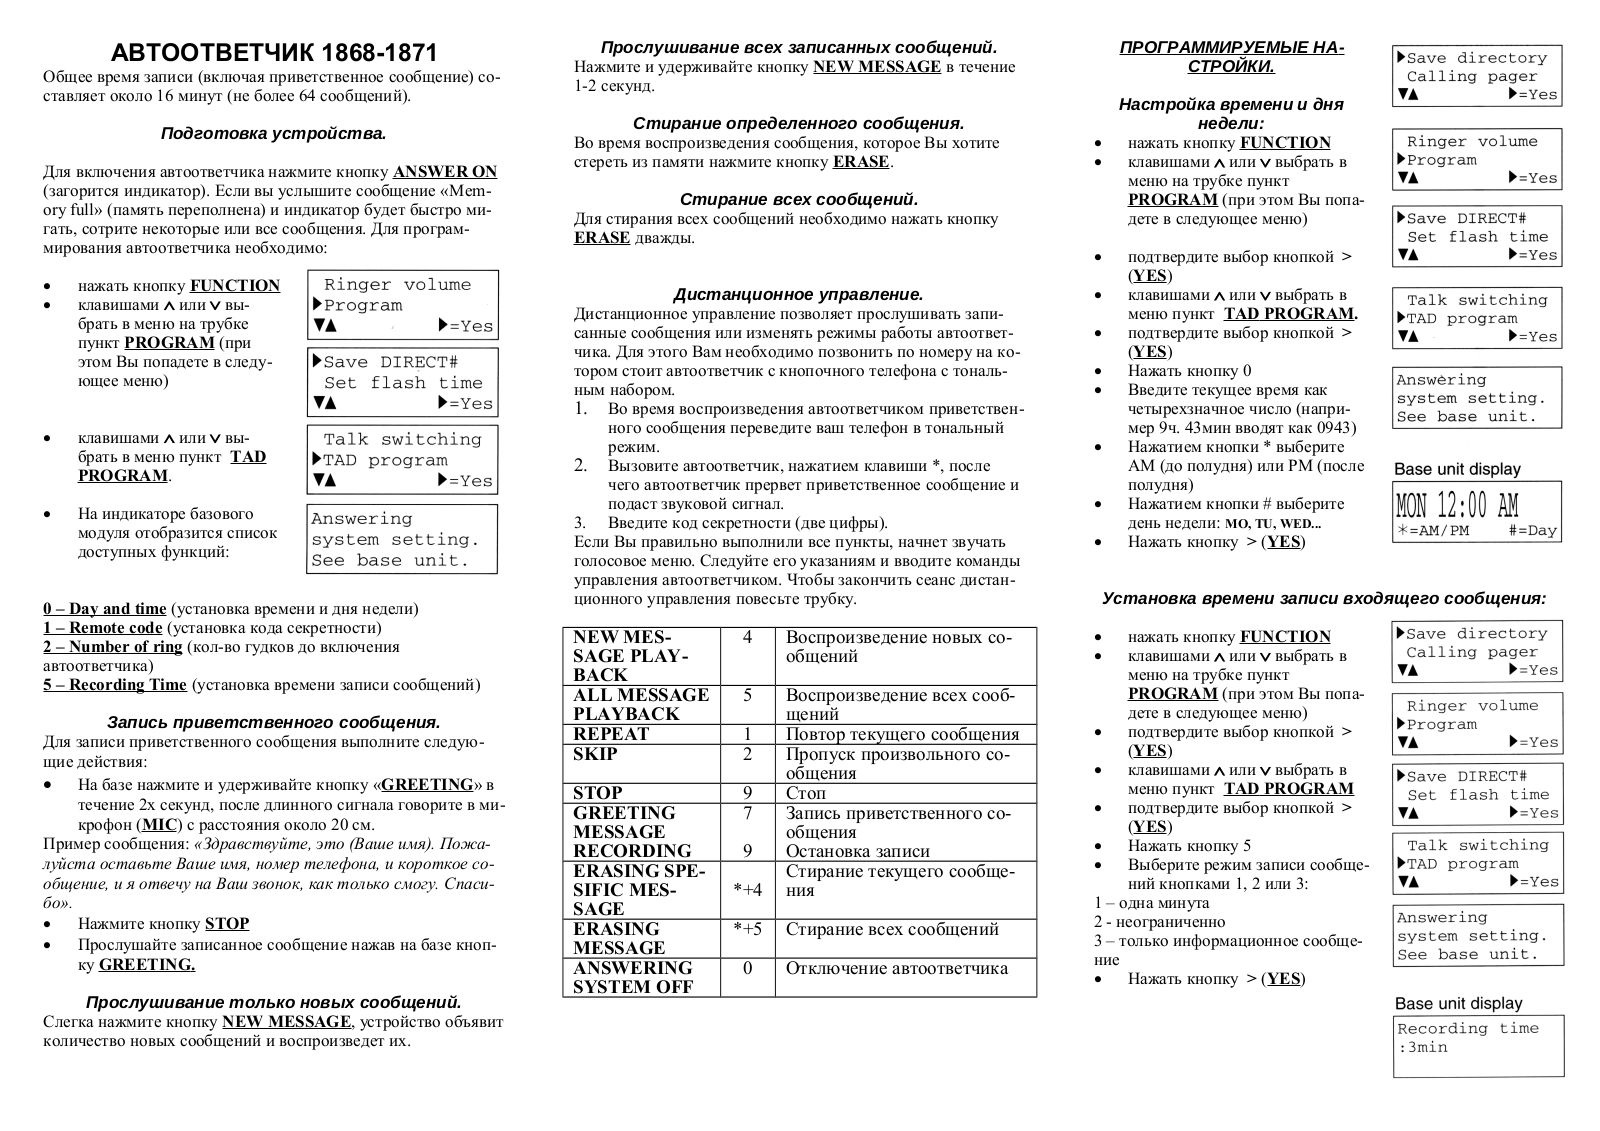 PANASONIC KX-TC1868, KX-TC1871 User Manual